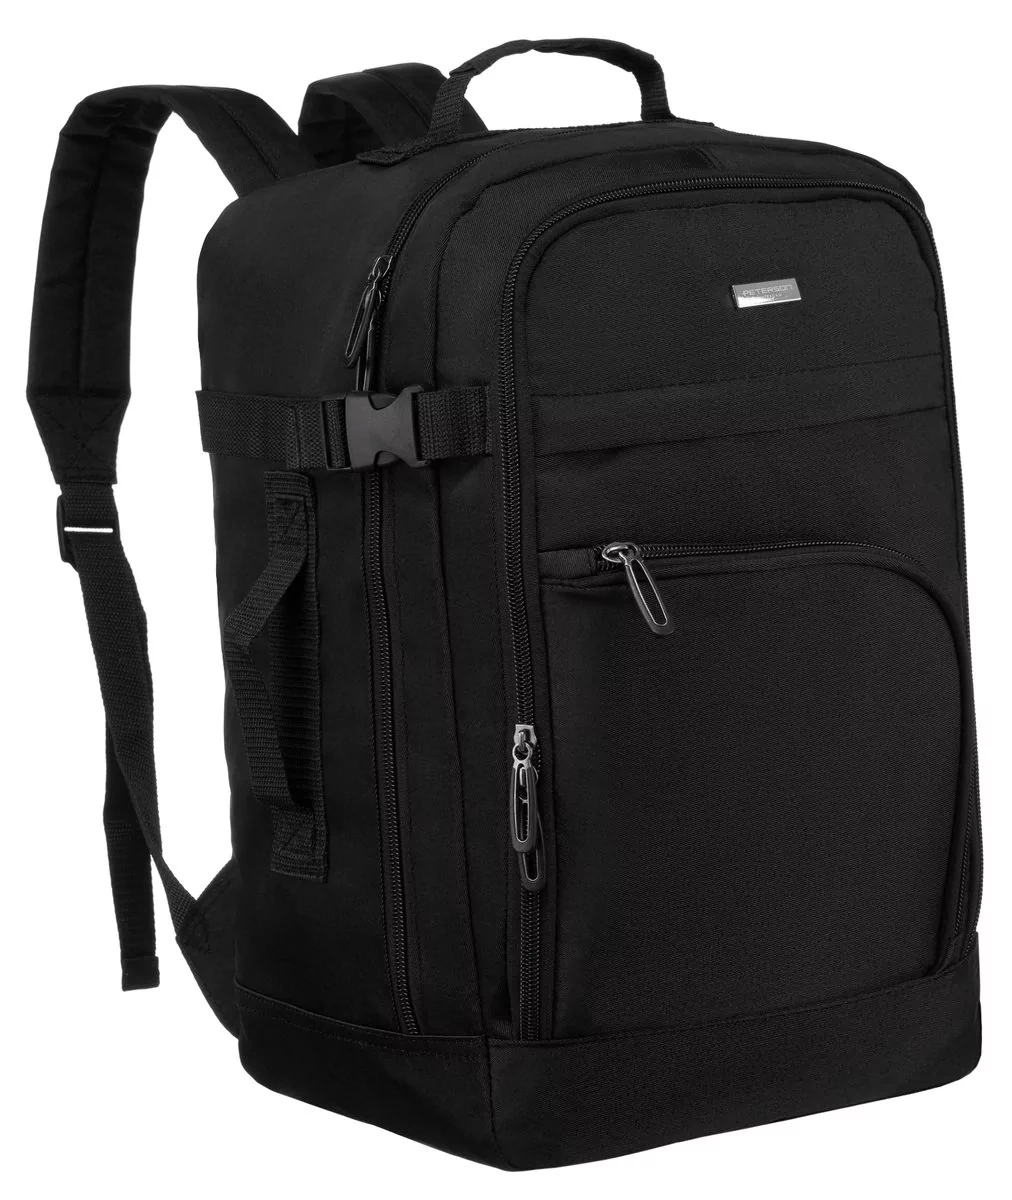 PETERSON plecak podróżny do samolotu bagaż kabinowy torba 40x25x20 czarny